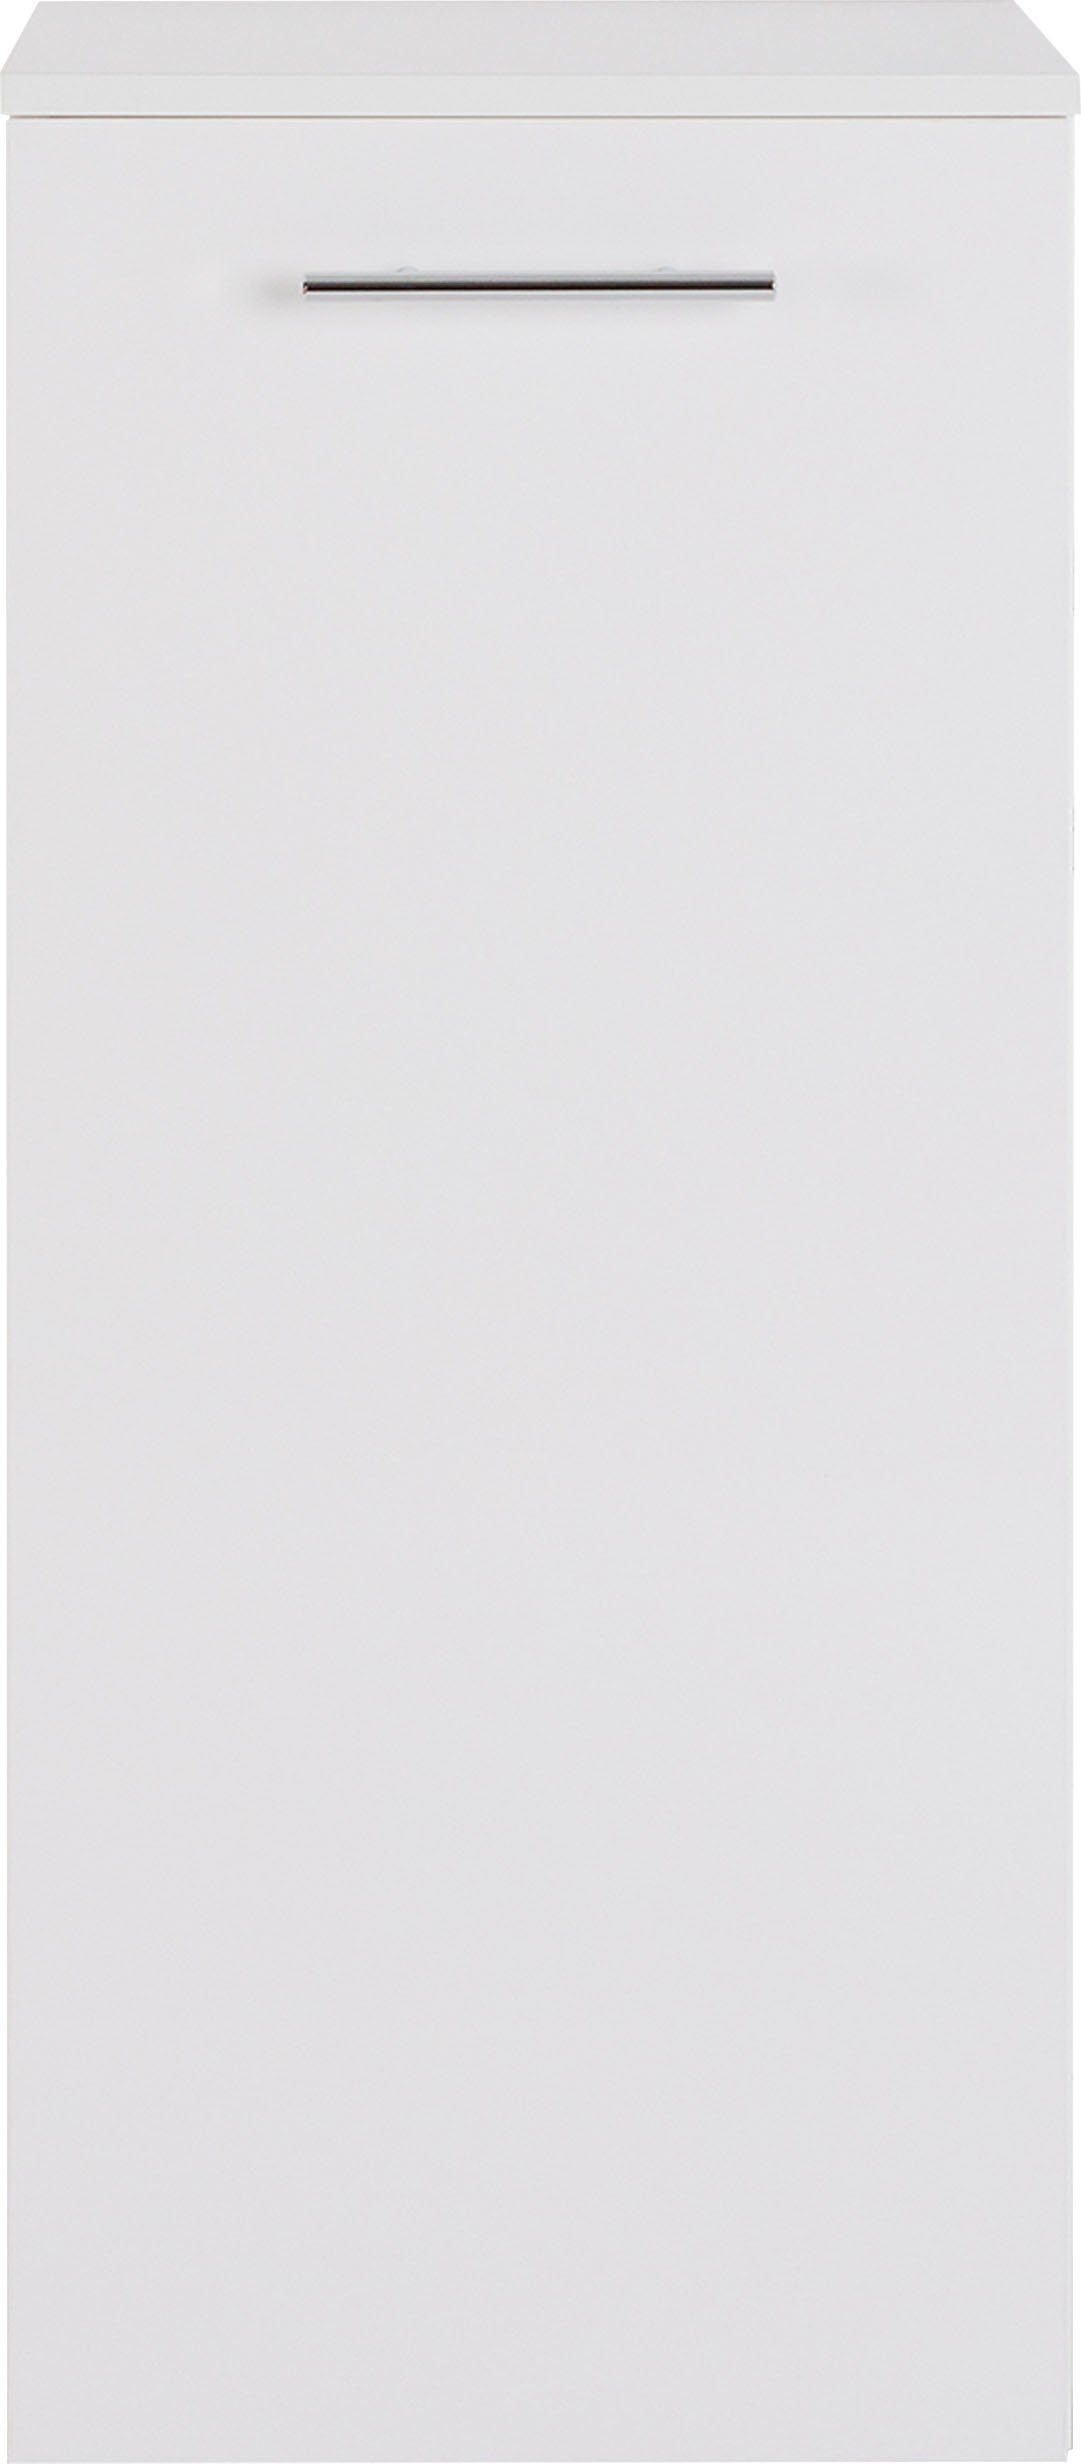 Midischrank Breite cm 40 weiß | 3040, MARLIN weiß